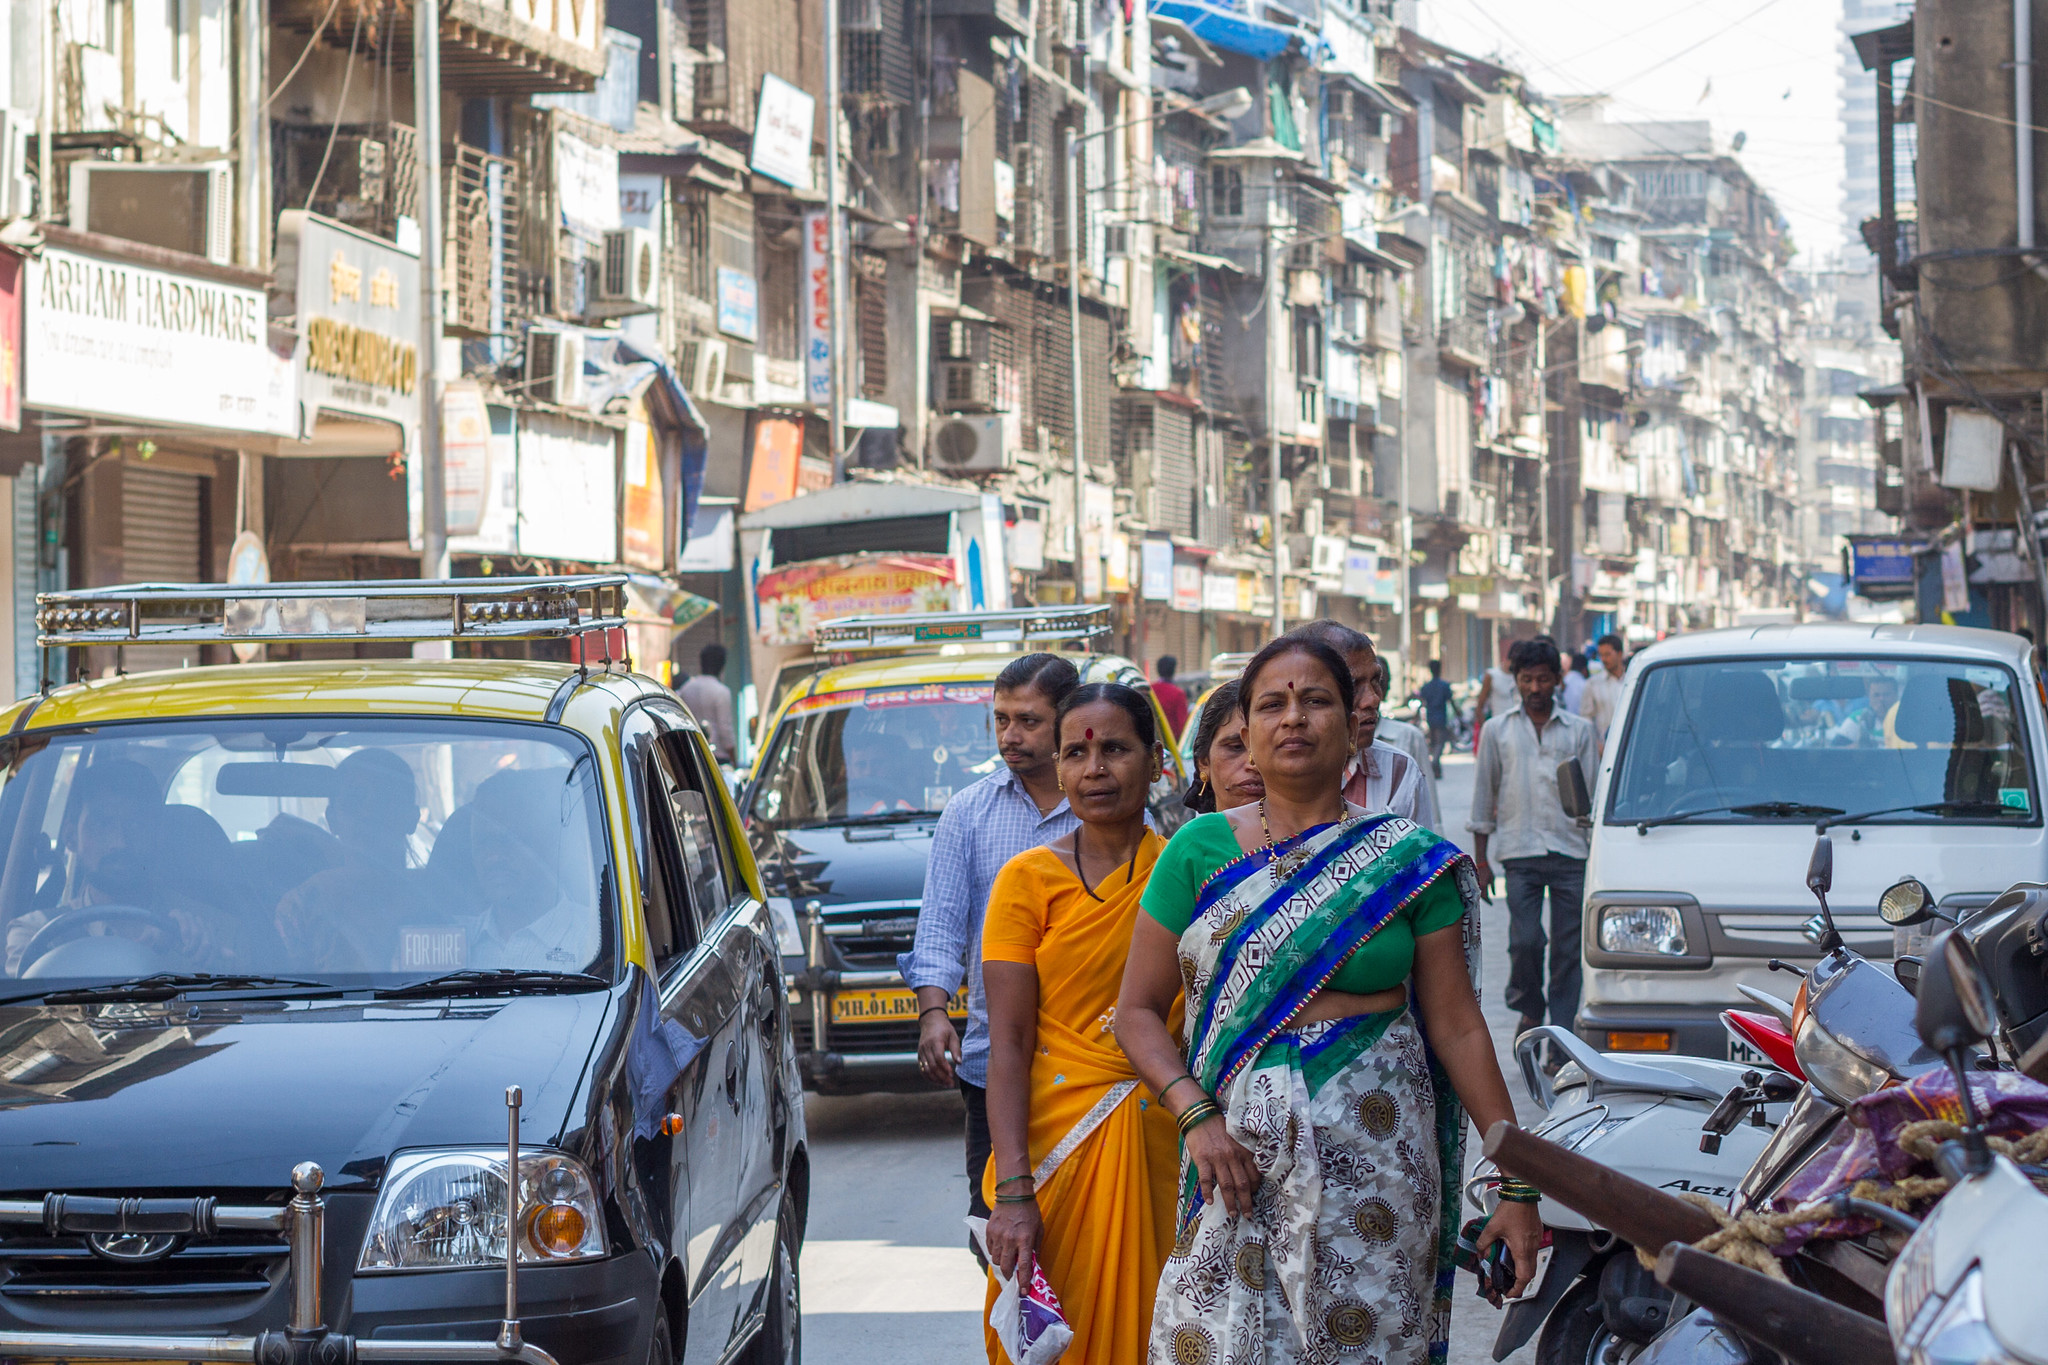 Femmes marchant dans une rue animée en Inde